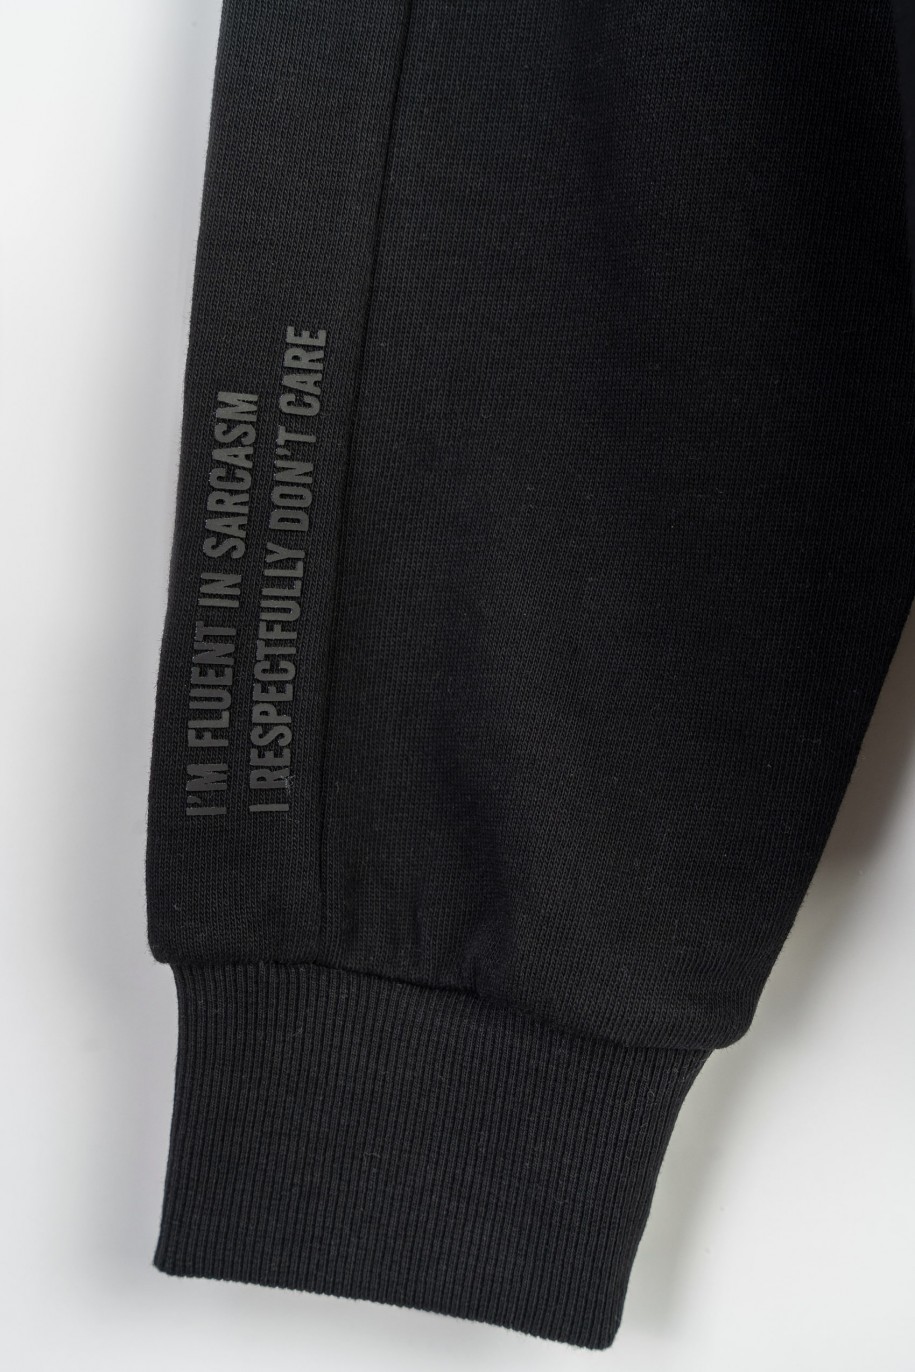 Czarna bluza bomberka z minimalistycznymi nadrukami zapiana na zamek - 47473